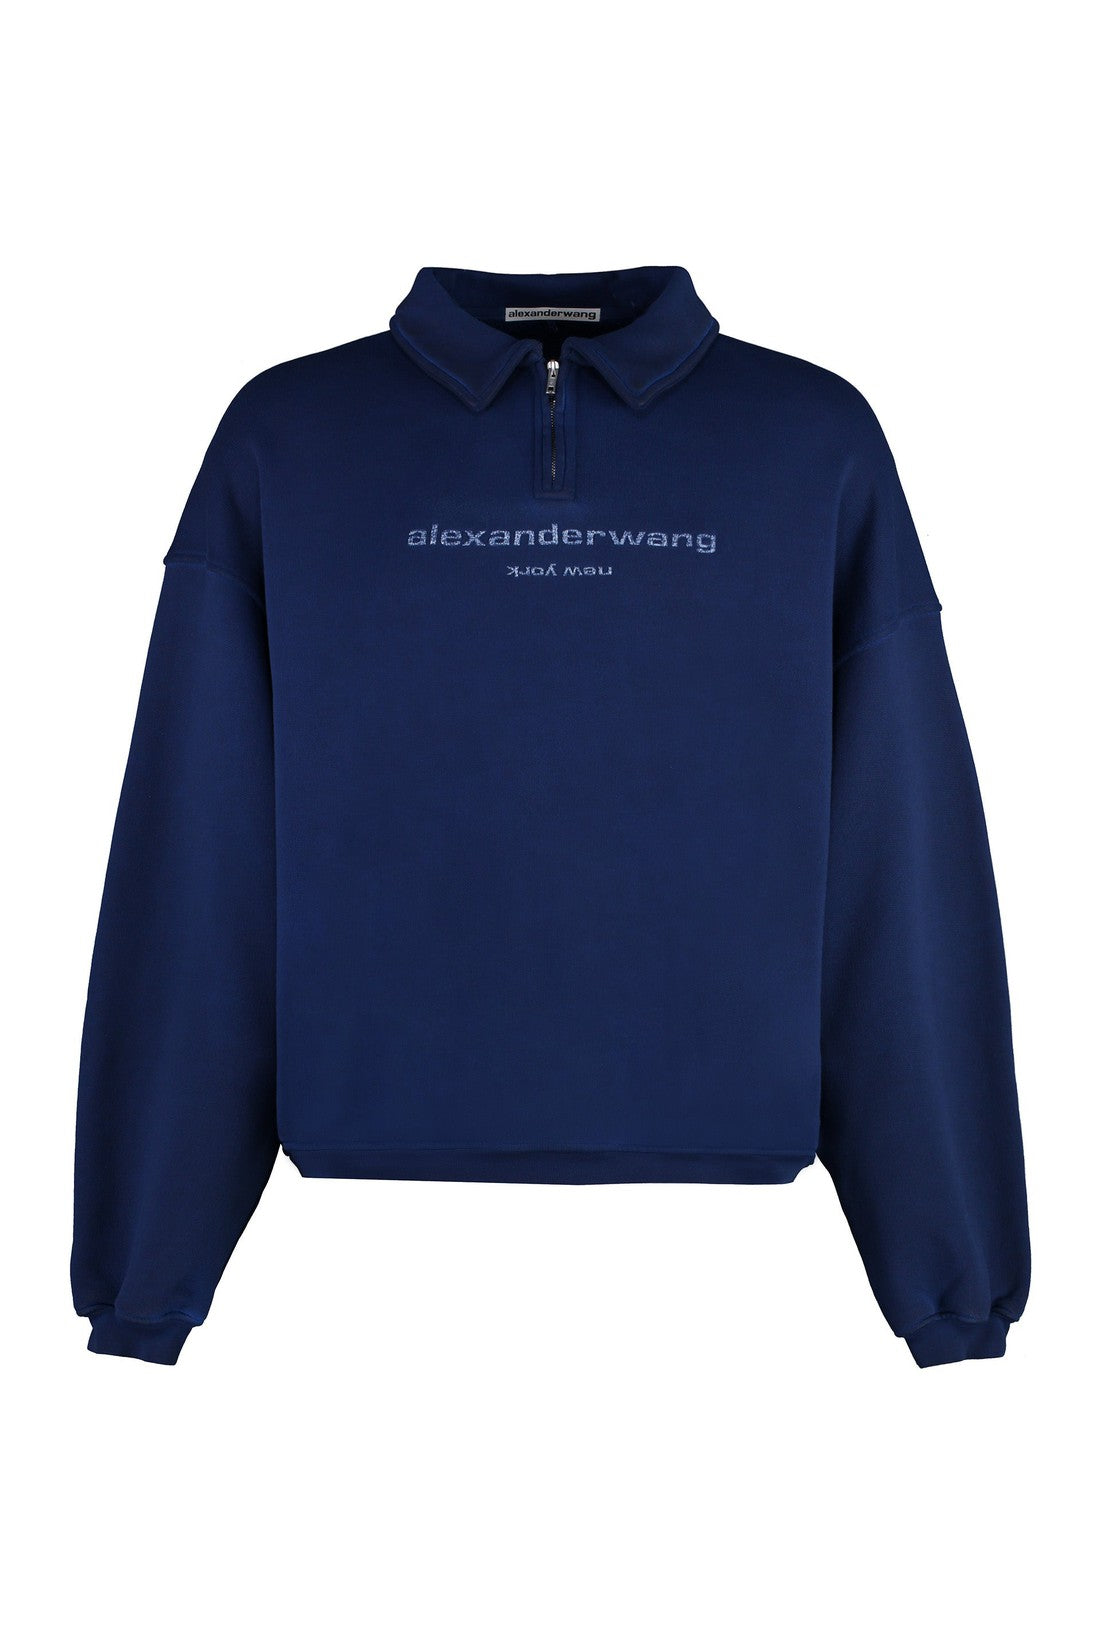 Alexander Wang-OUTLET-SALE-Cotton crew-neck sweatshirt-ARCHIVIST